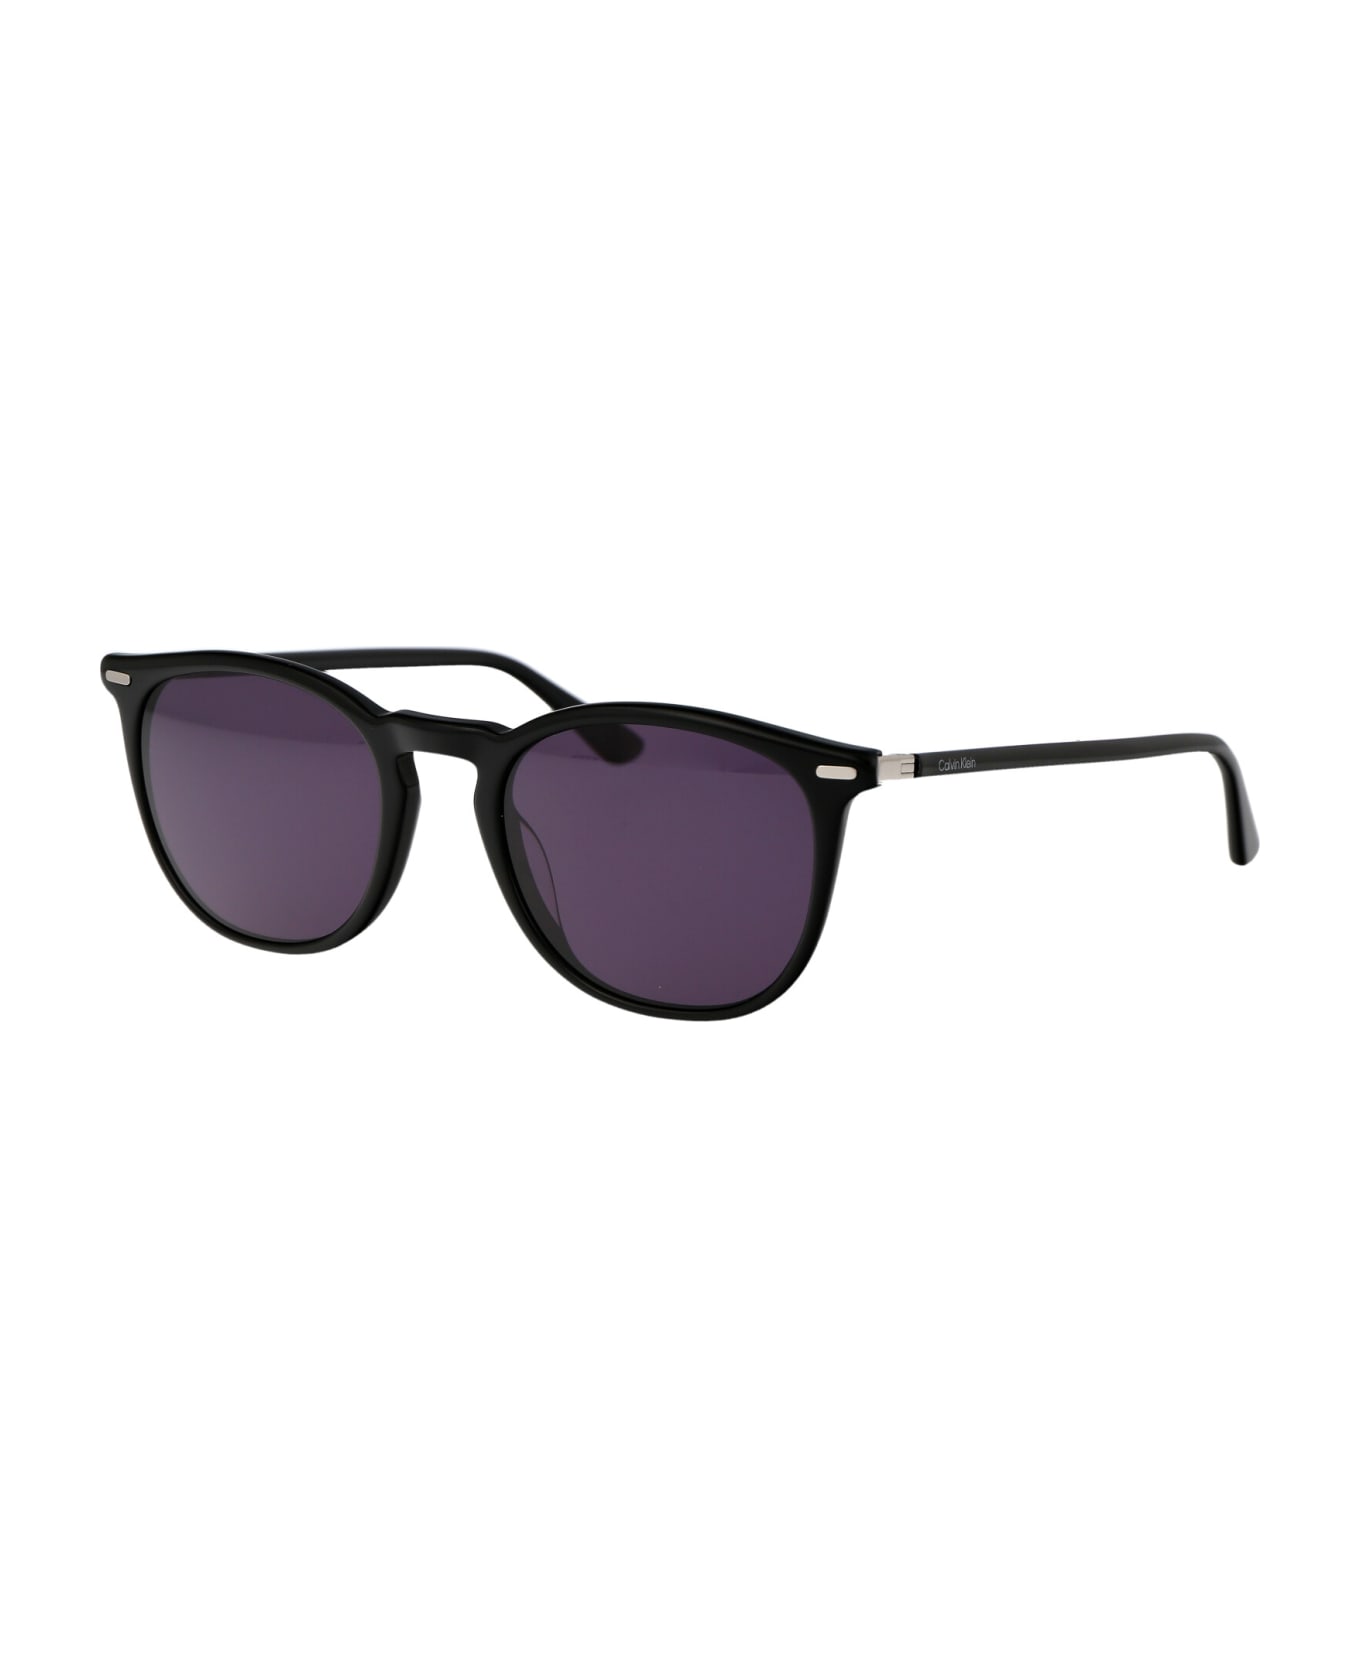 Calvin Klein Ck22533s Sunglasses - 001 BLACK サングラス